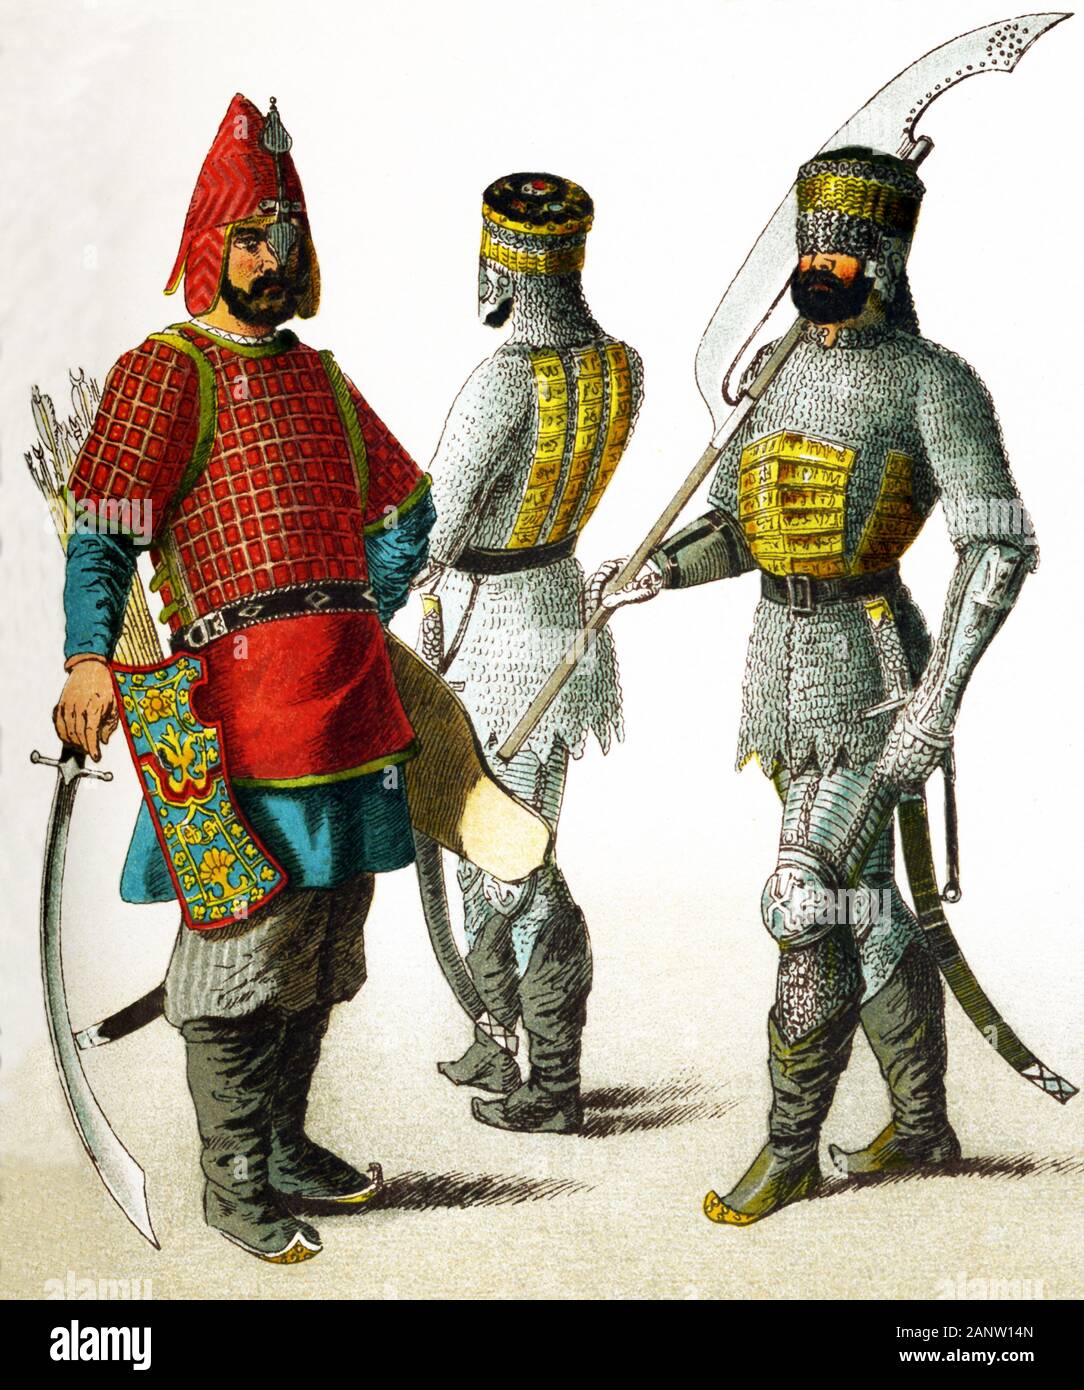 Ici les chiffres représentent des guerriers slaves en l'an 1400. Ils sont, de gauche à droite : trois guerriers russes. L'illustration dates à 1882. Banque D'Images